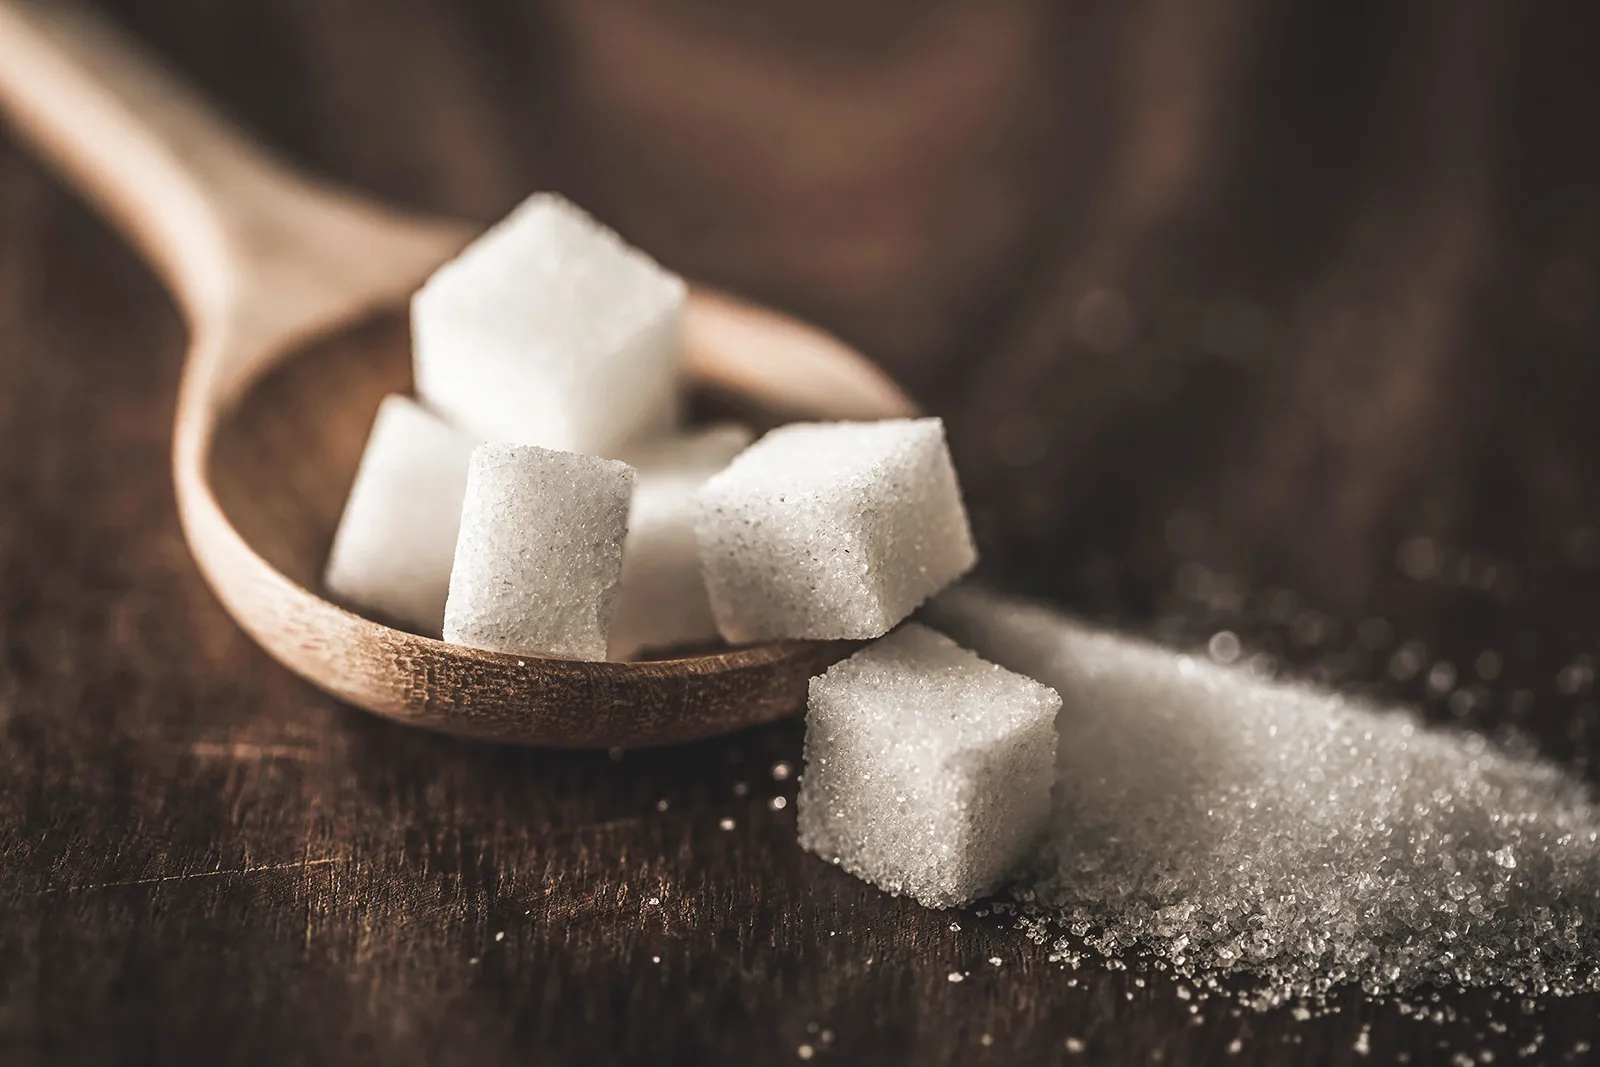 السكر المضاف في الأطعمة المصنعة يشكل خطرًا على صحتنا